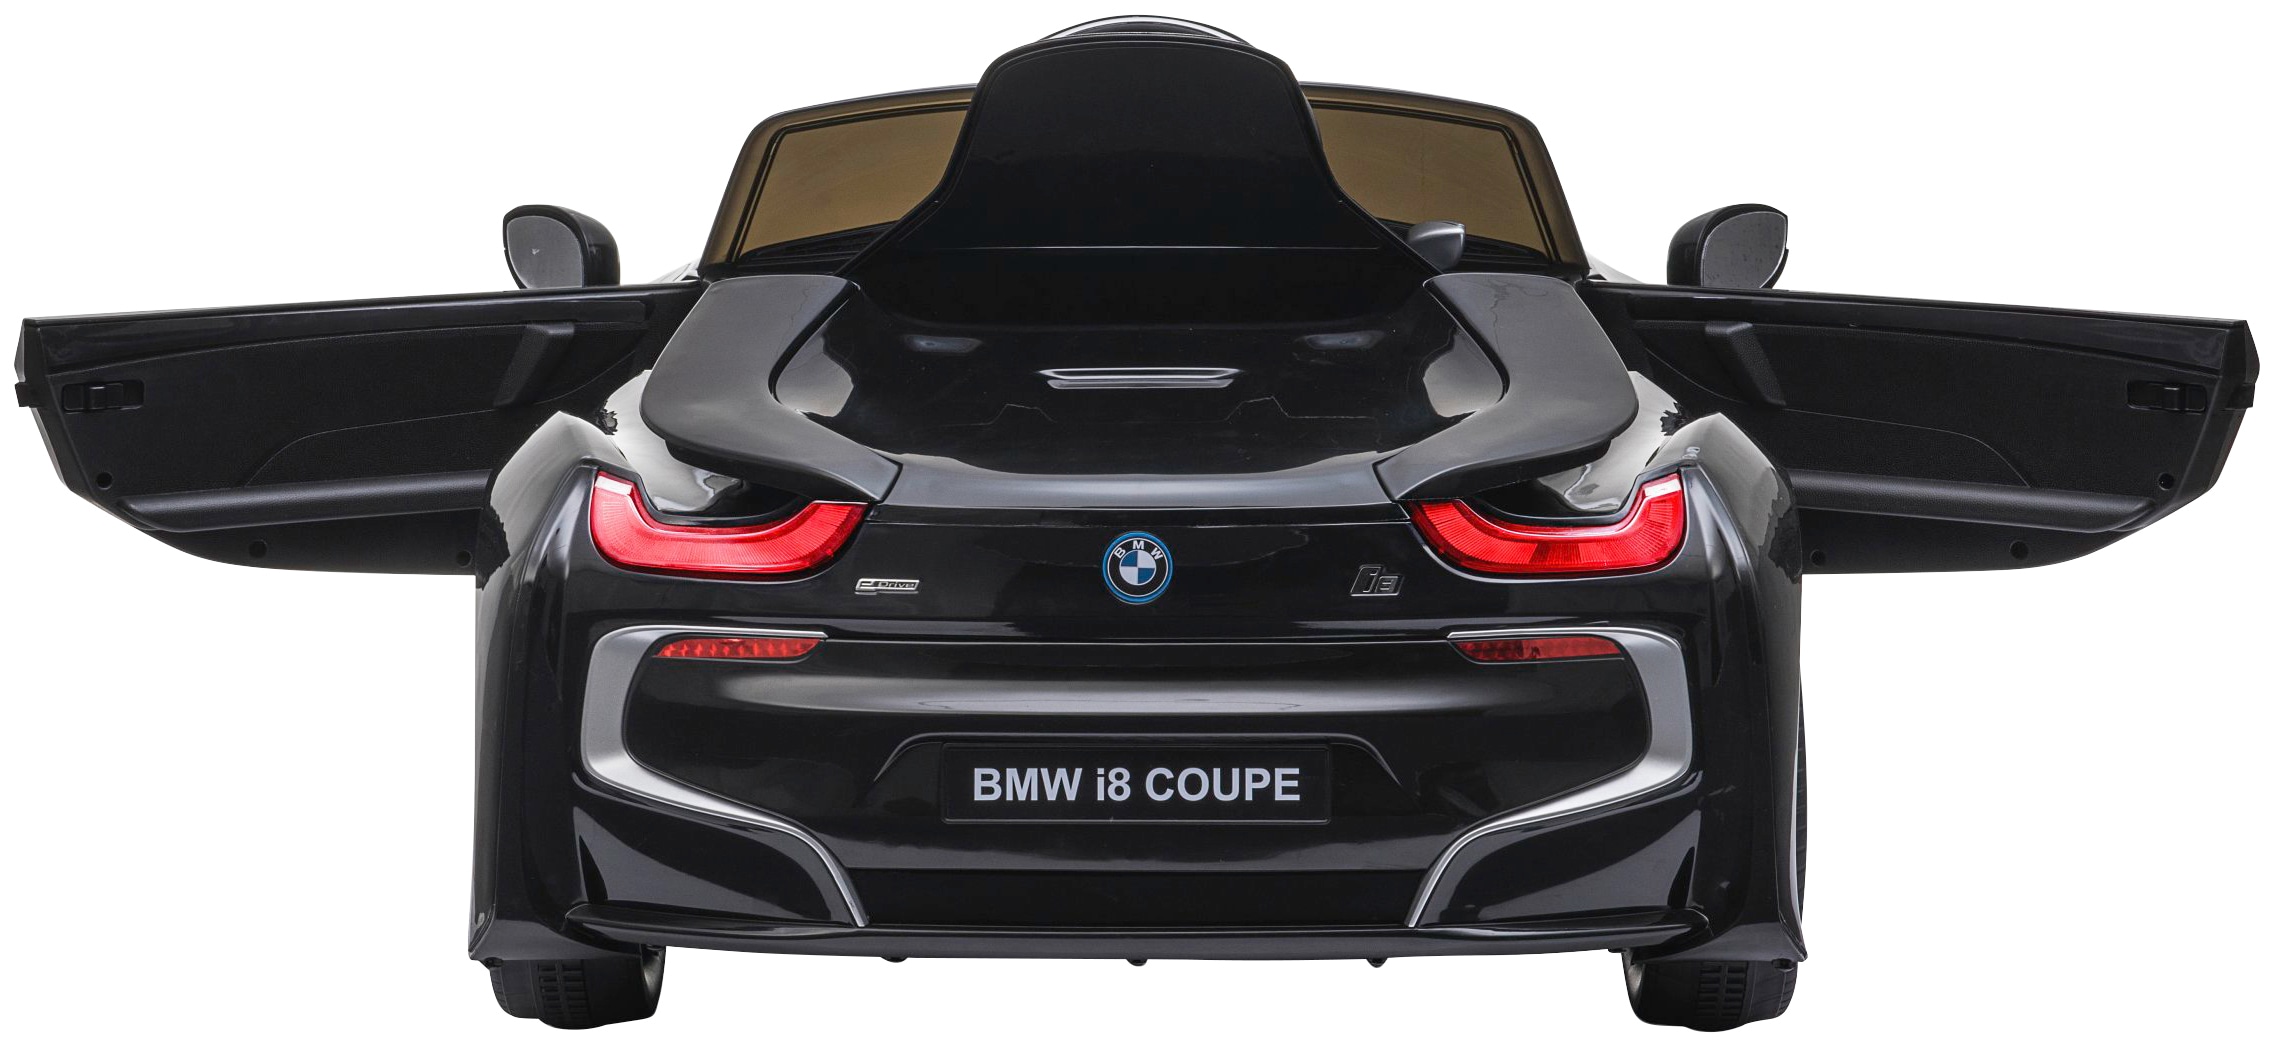 Jamara Elektro-Kinderauto »Ride-on BMW I8 Coupe schwarz«, ab 3 Jahren, bis 30 kg